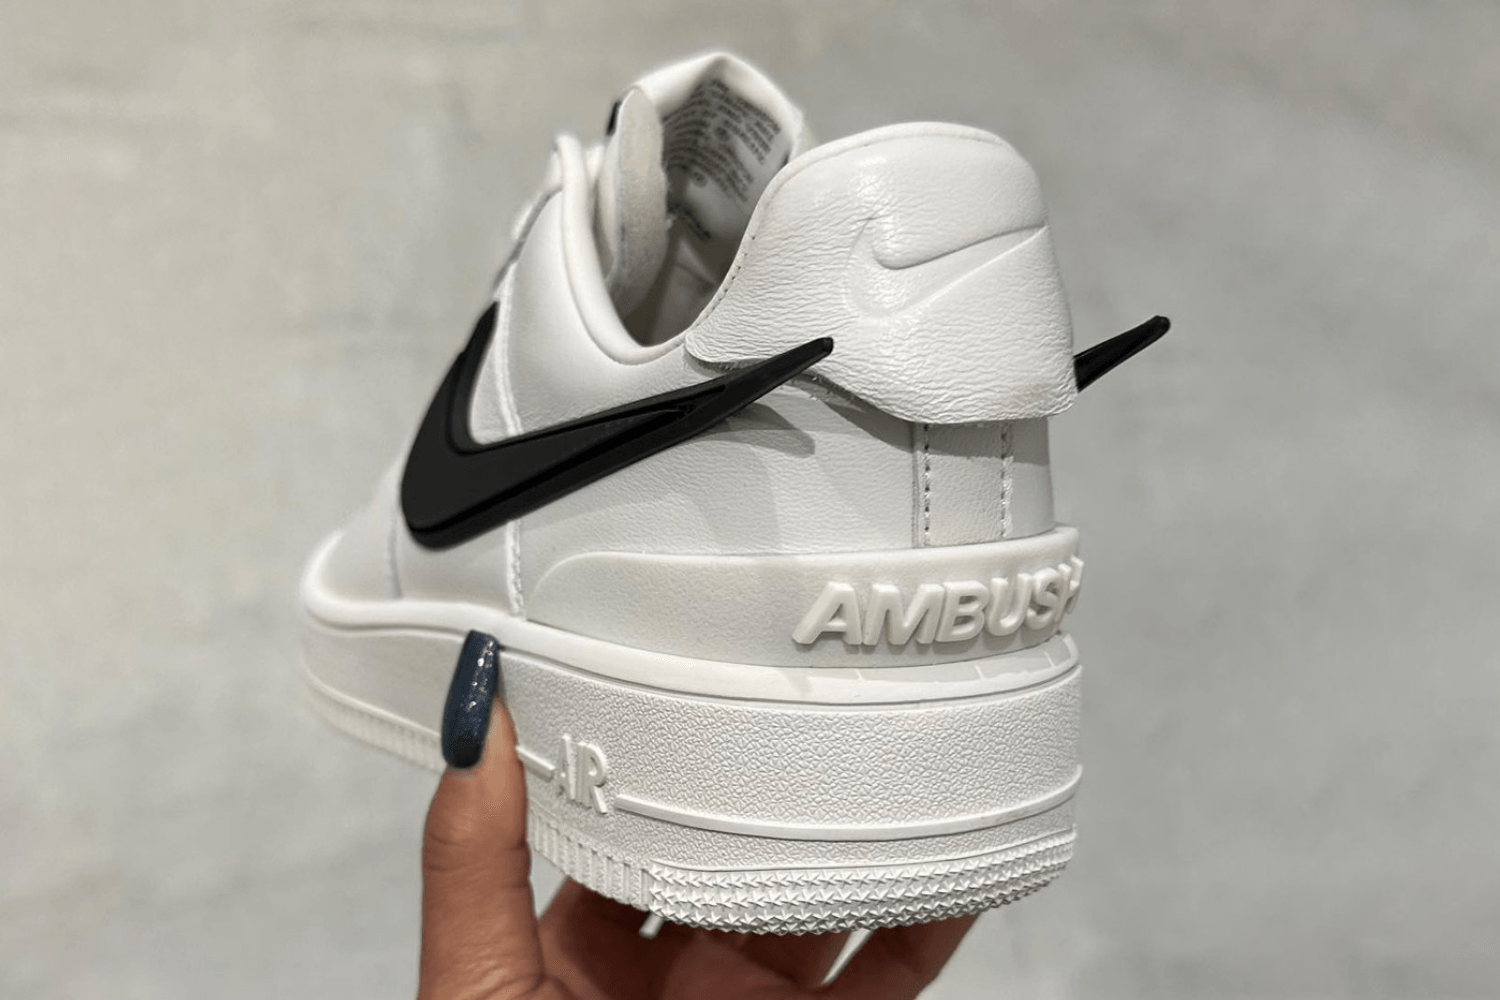 Yoon Ahn teased nieuwe AMBUSH x Nike Air Force 1